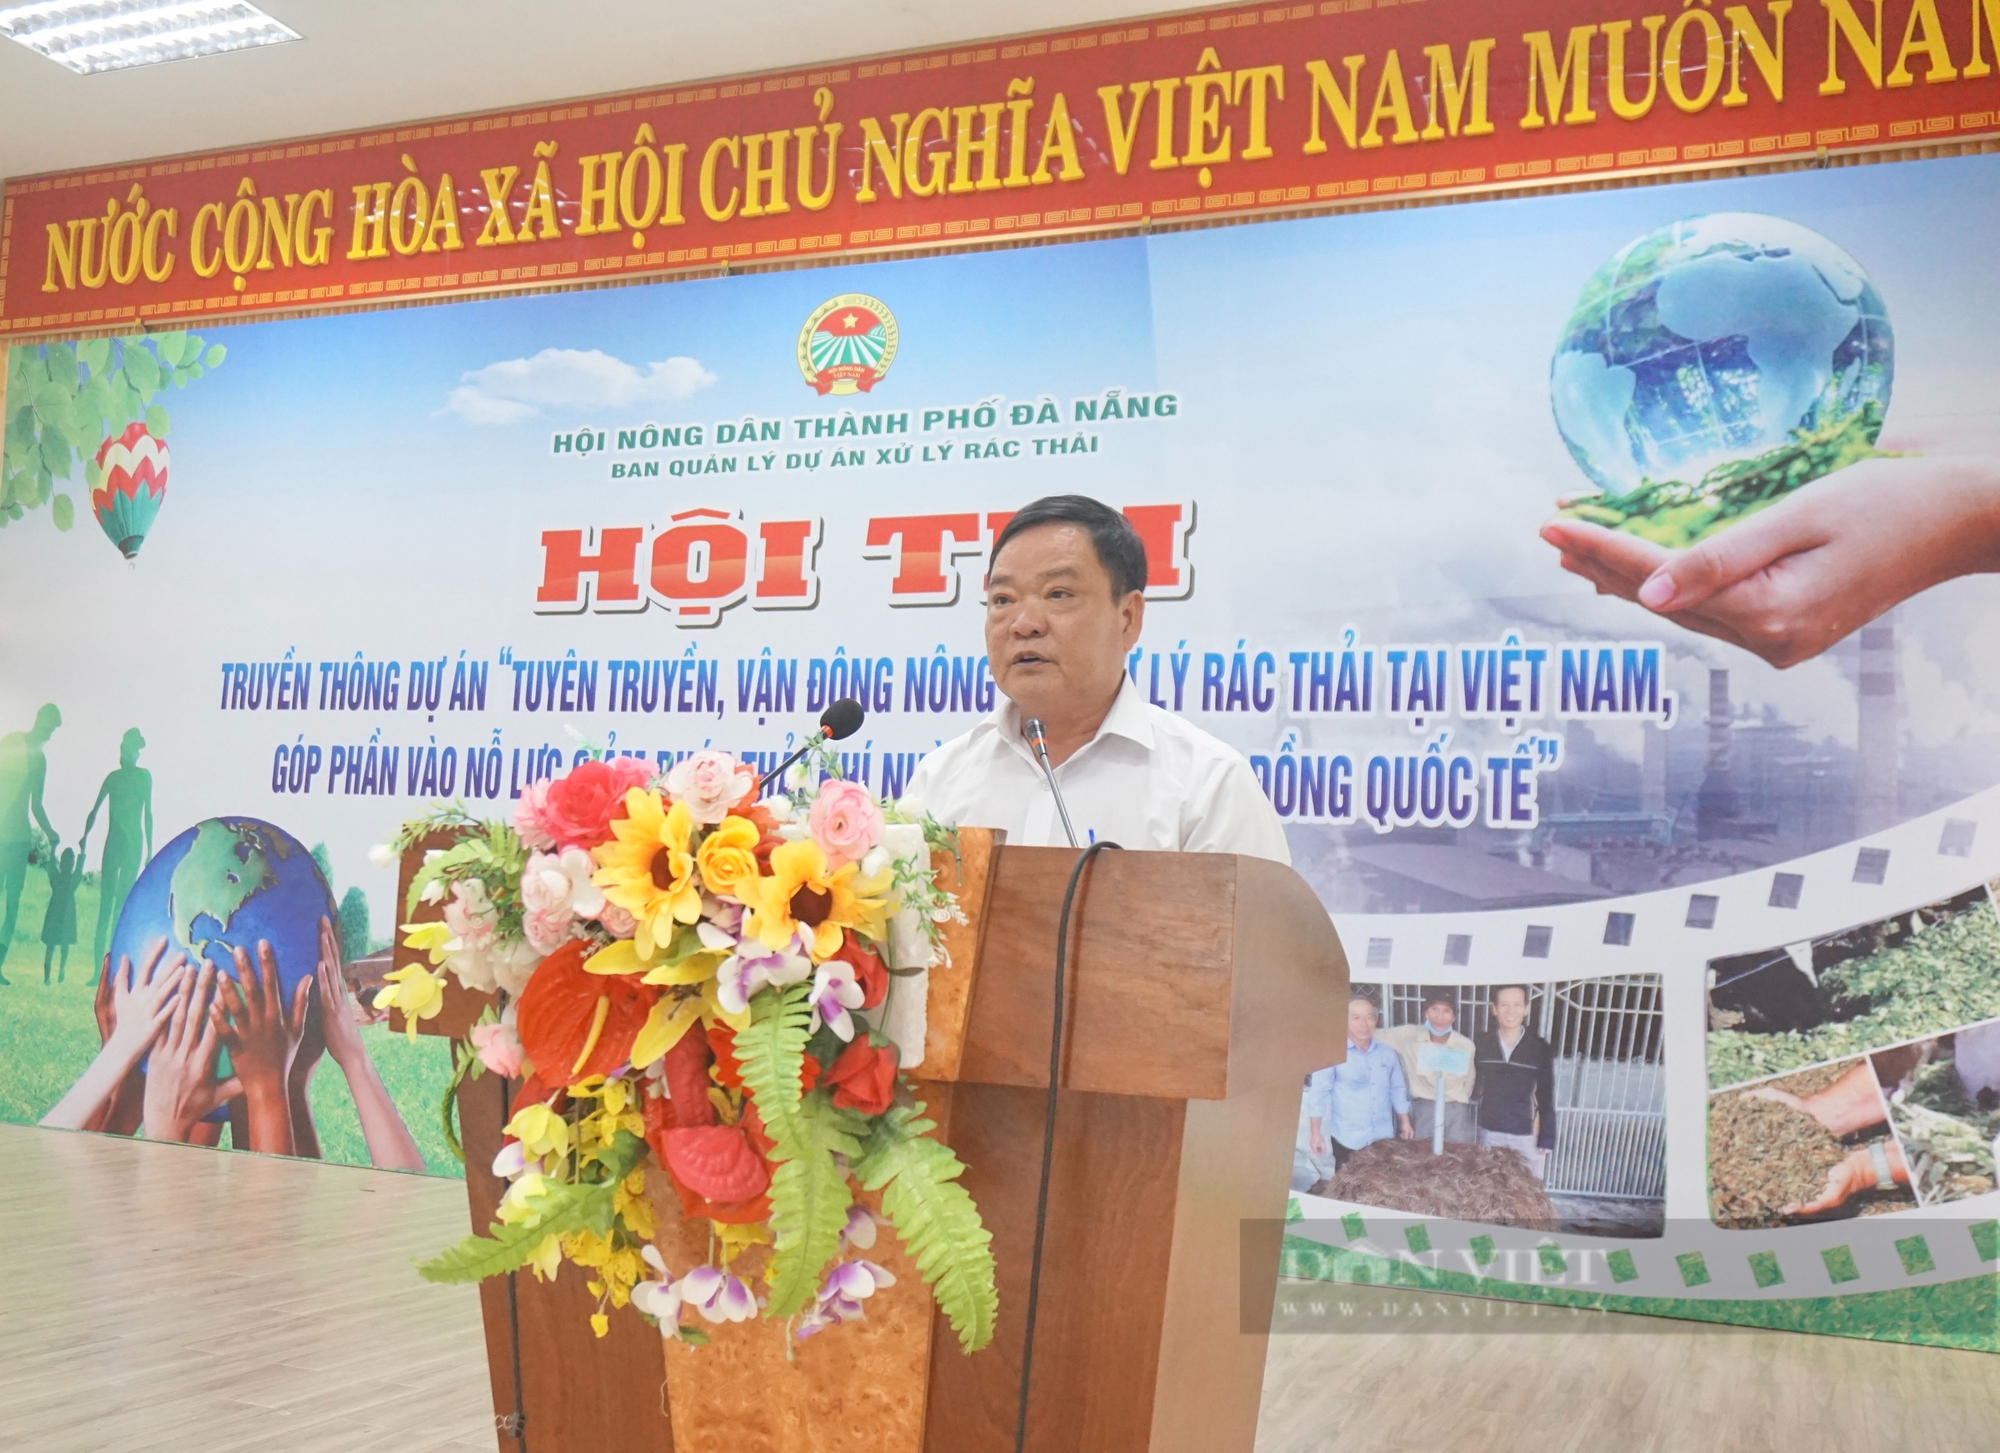 Đà Nẵng: Sôi nổi Hội thi tuyên truyền, vận động nông dân xử lý rác thải tại Việt Nam- Ảnh 1.